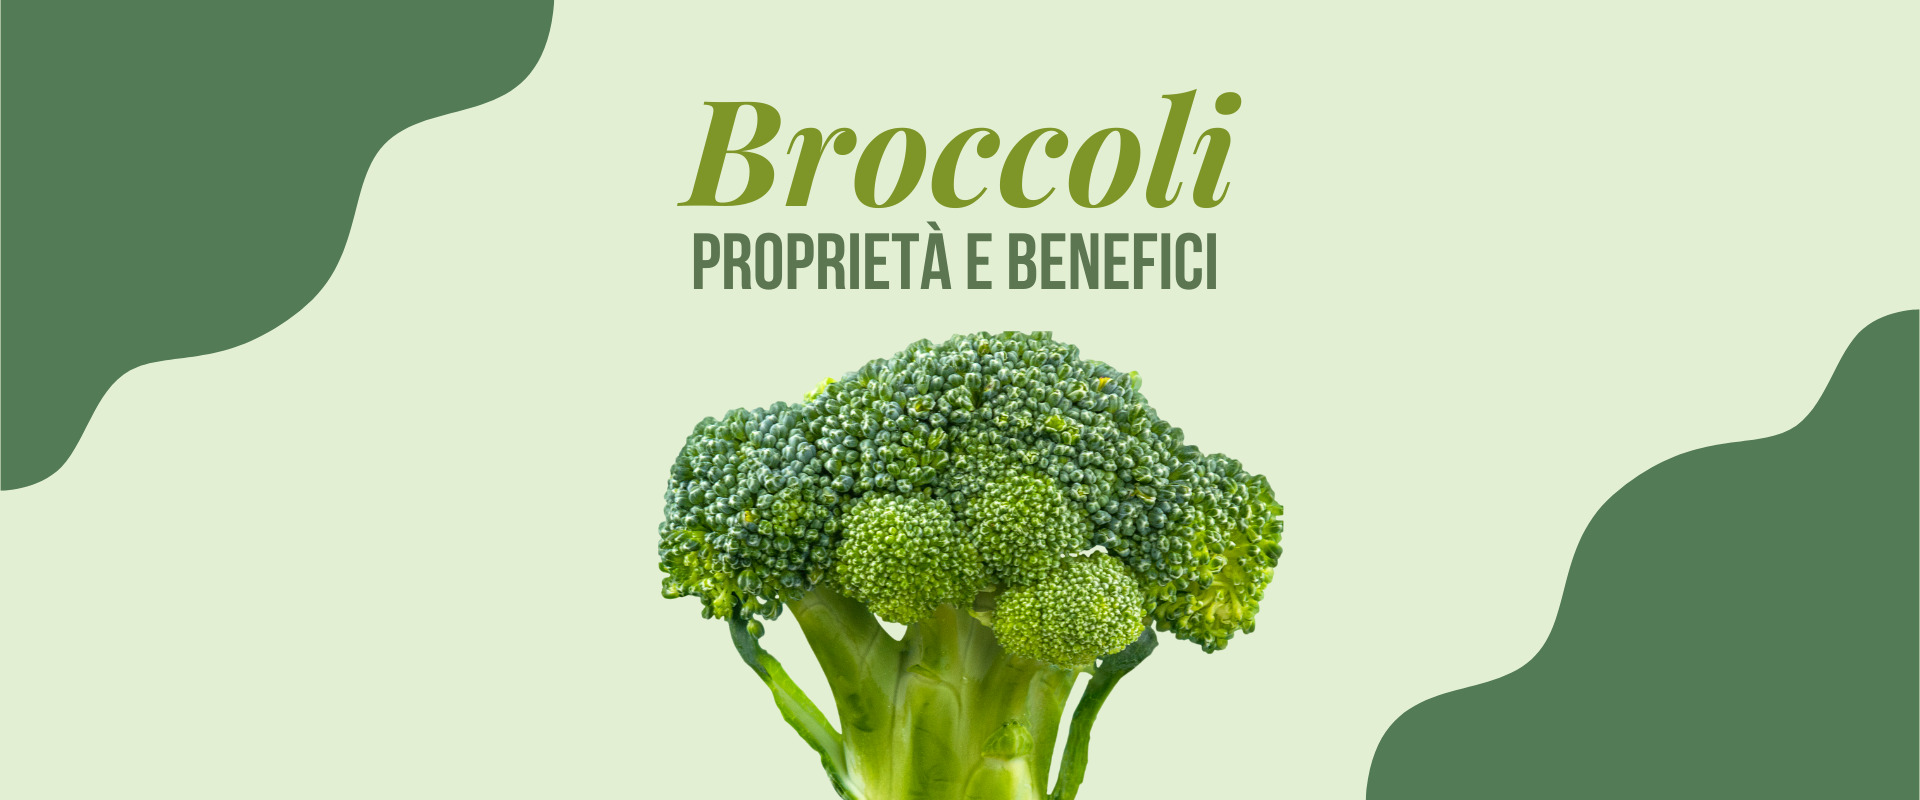 I broccoli, proprietà e benefici